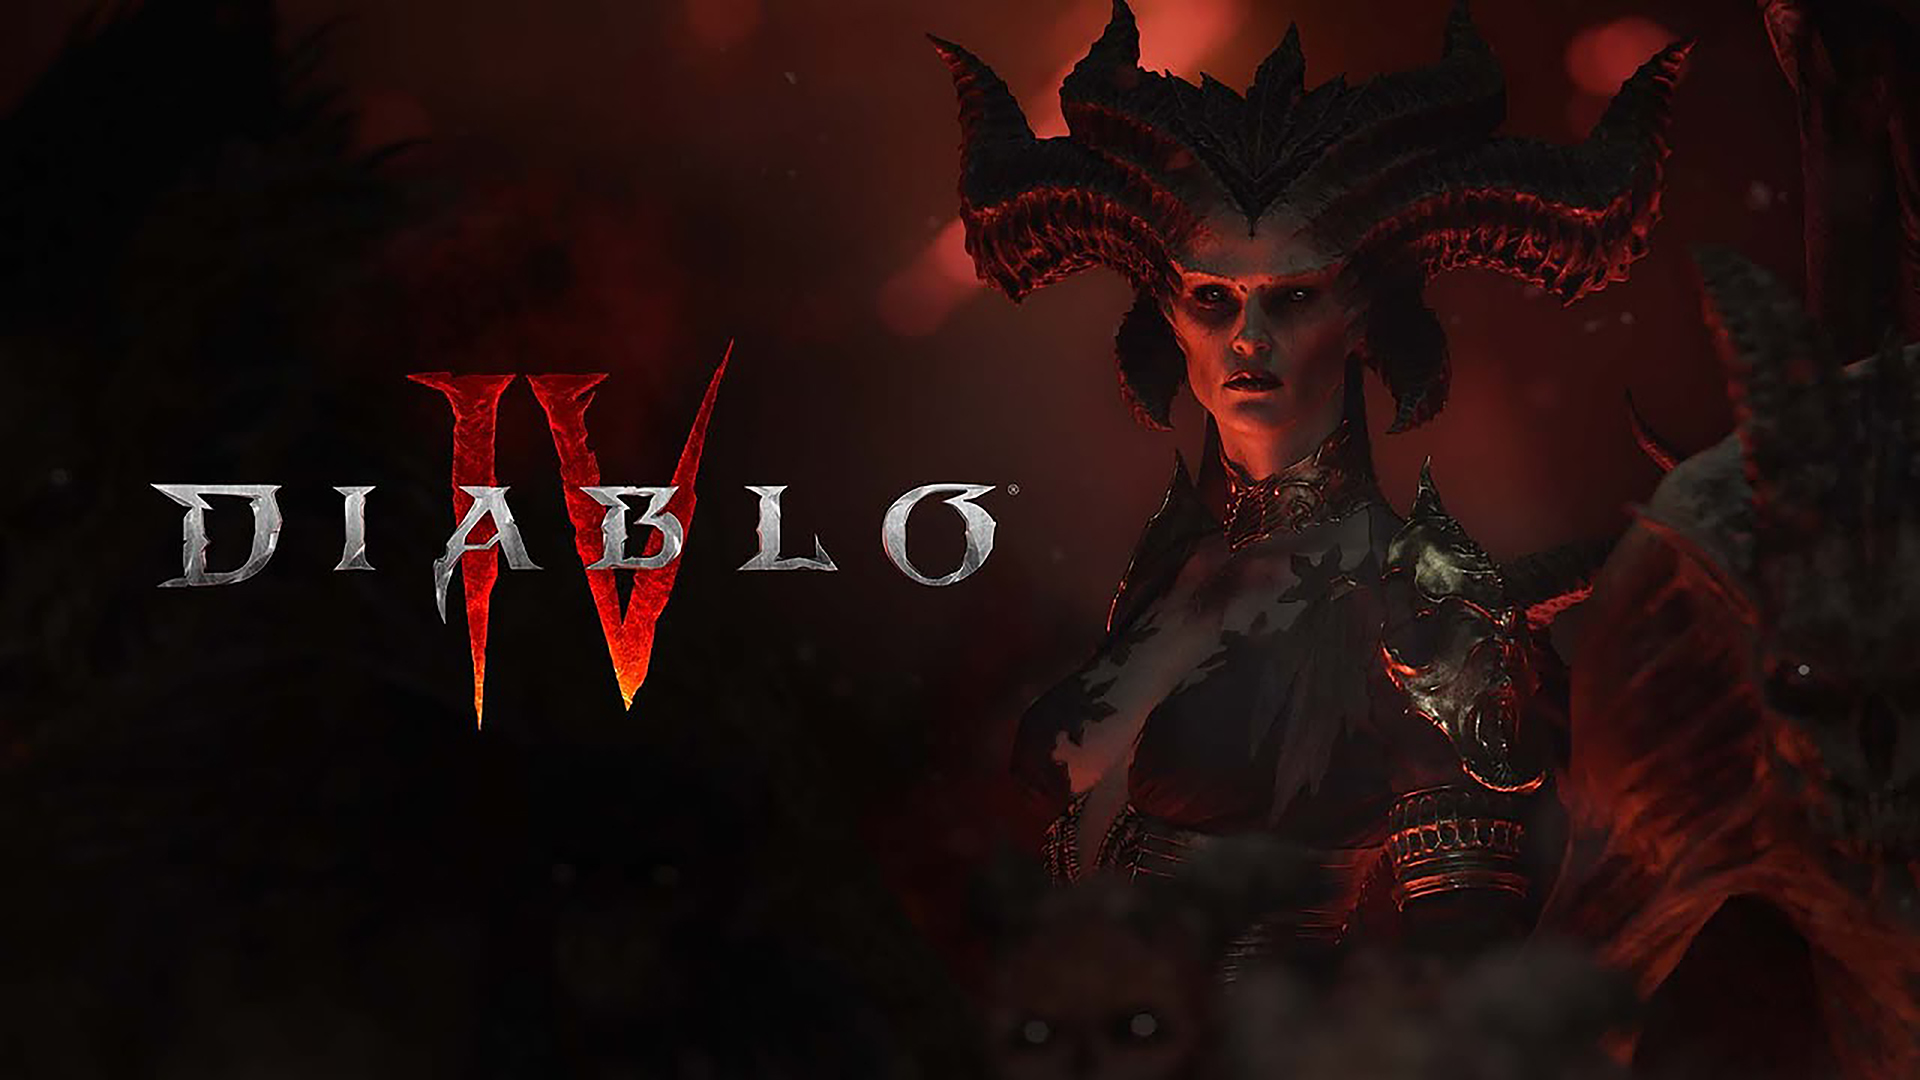 Beta Diablo 4